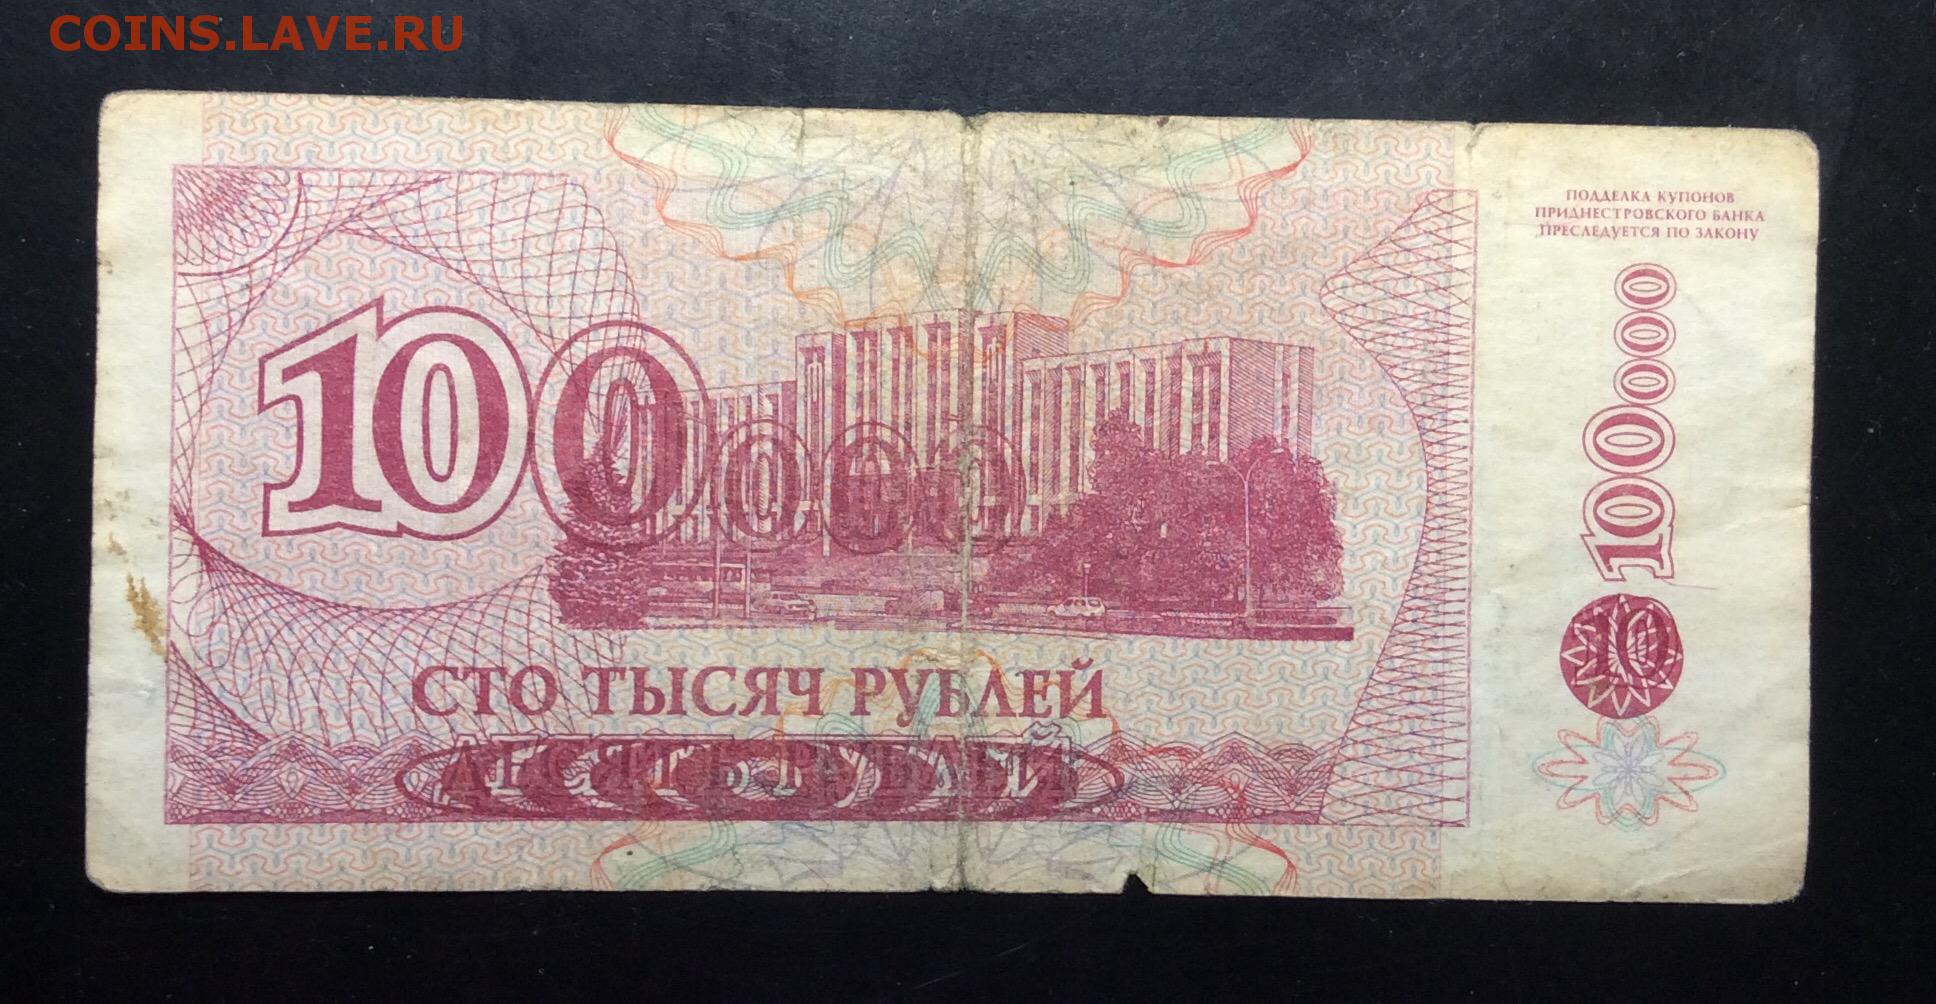 Сто шестьдесят рублей. Купюра 10000 рублей. 10000 Рублей 1994 года. Банкноты 10000 рублей. 10 000 Рублей бумажные.